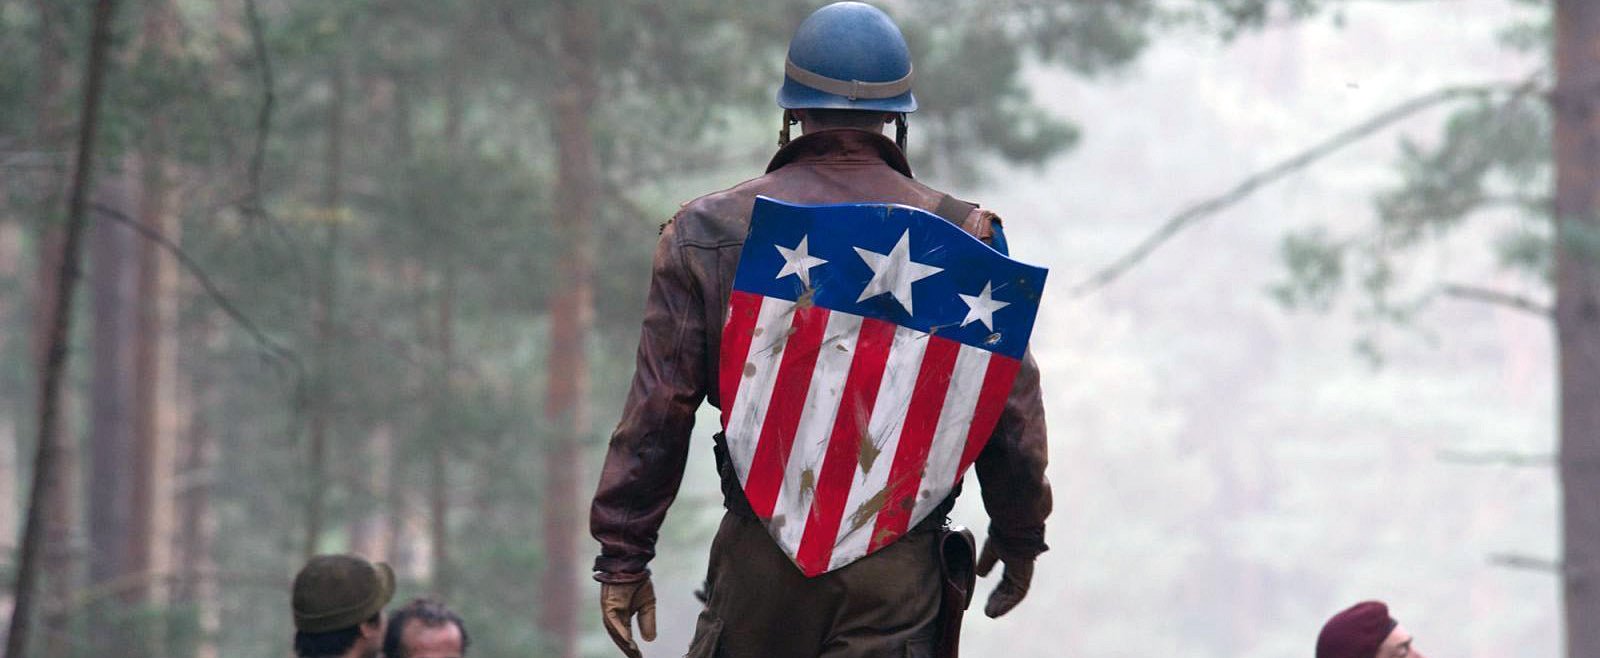 Captain America Featured